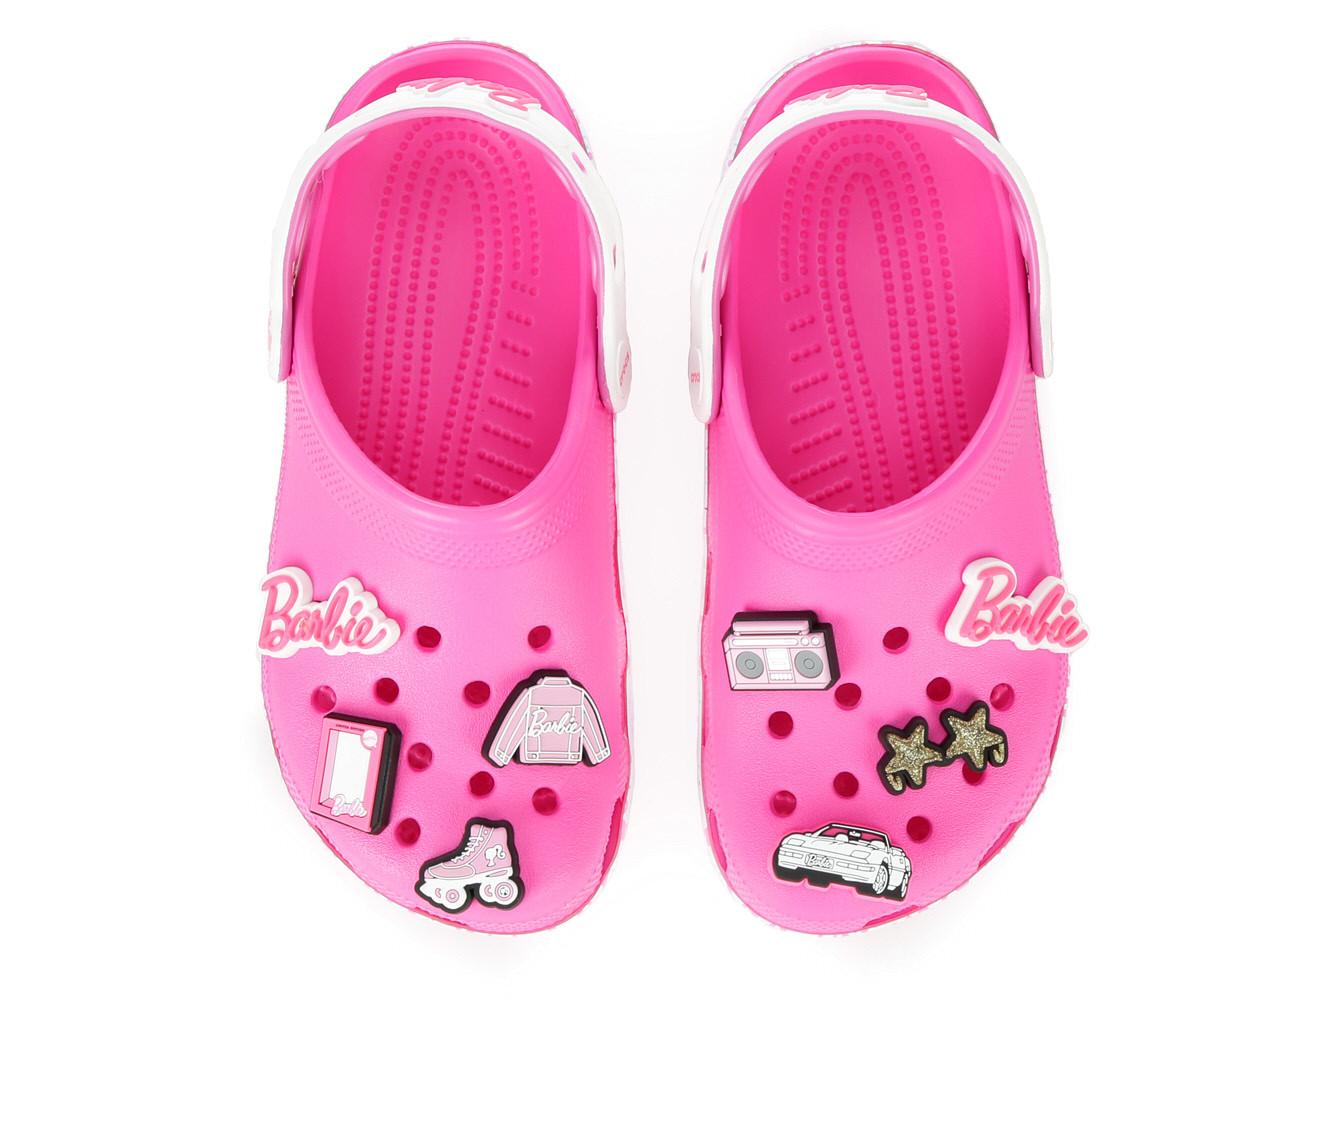 Women's Crocs Classic Barbie Clog